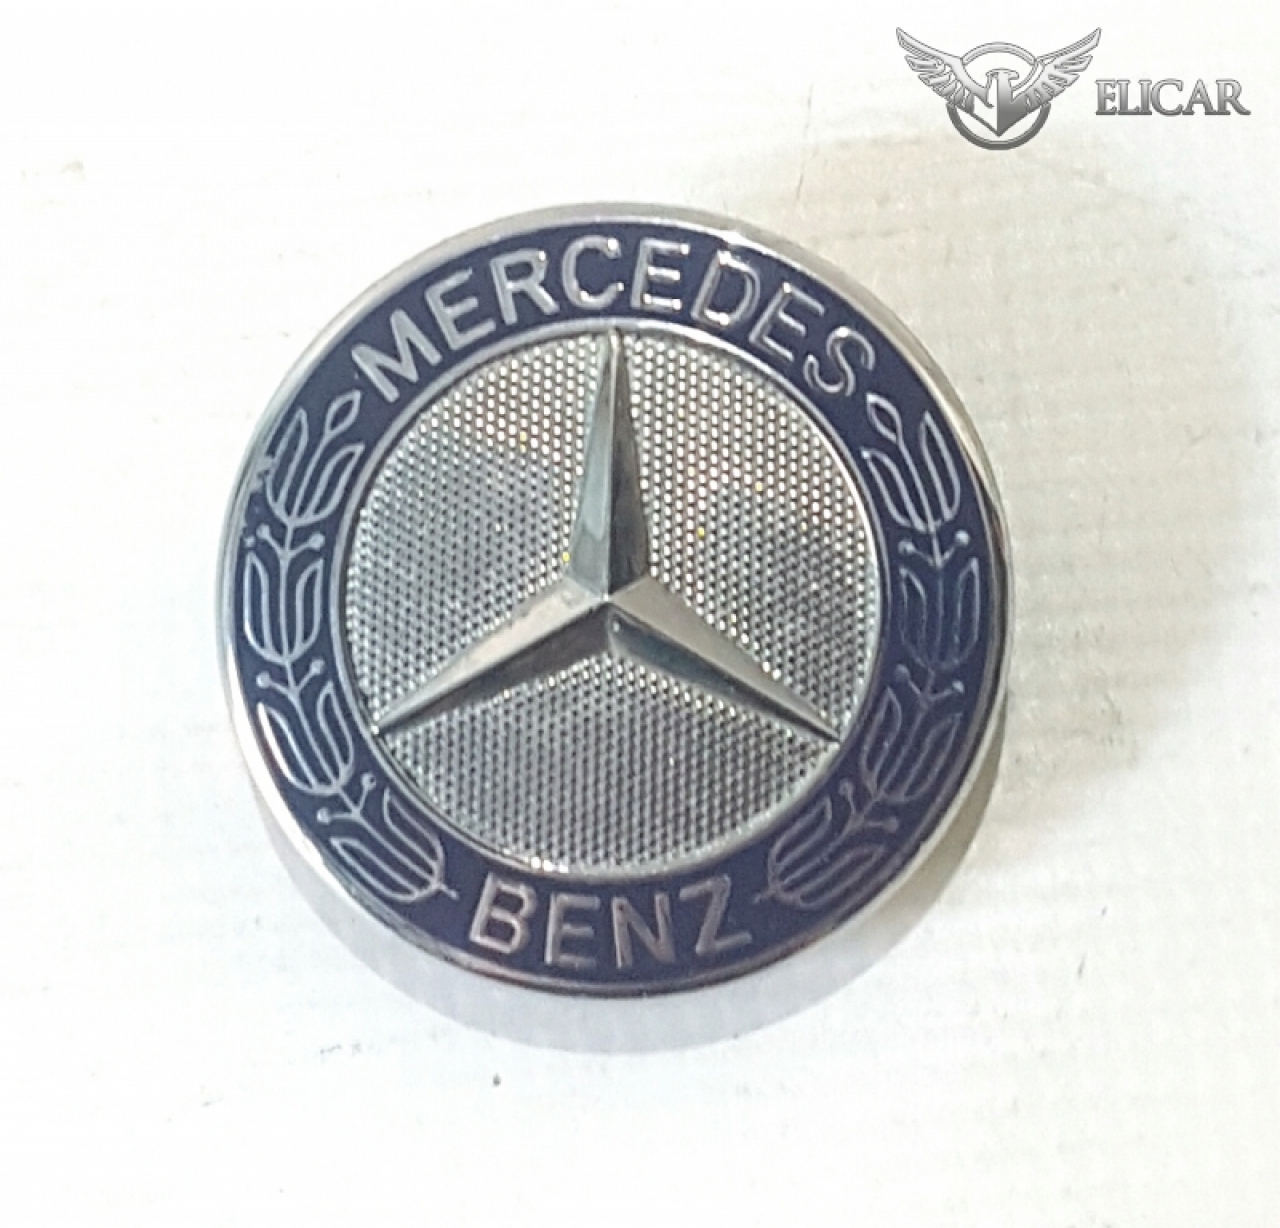  für Mercedes-Benz 